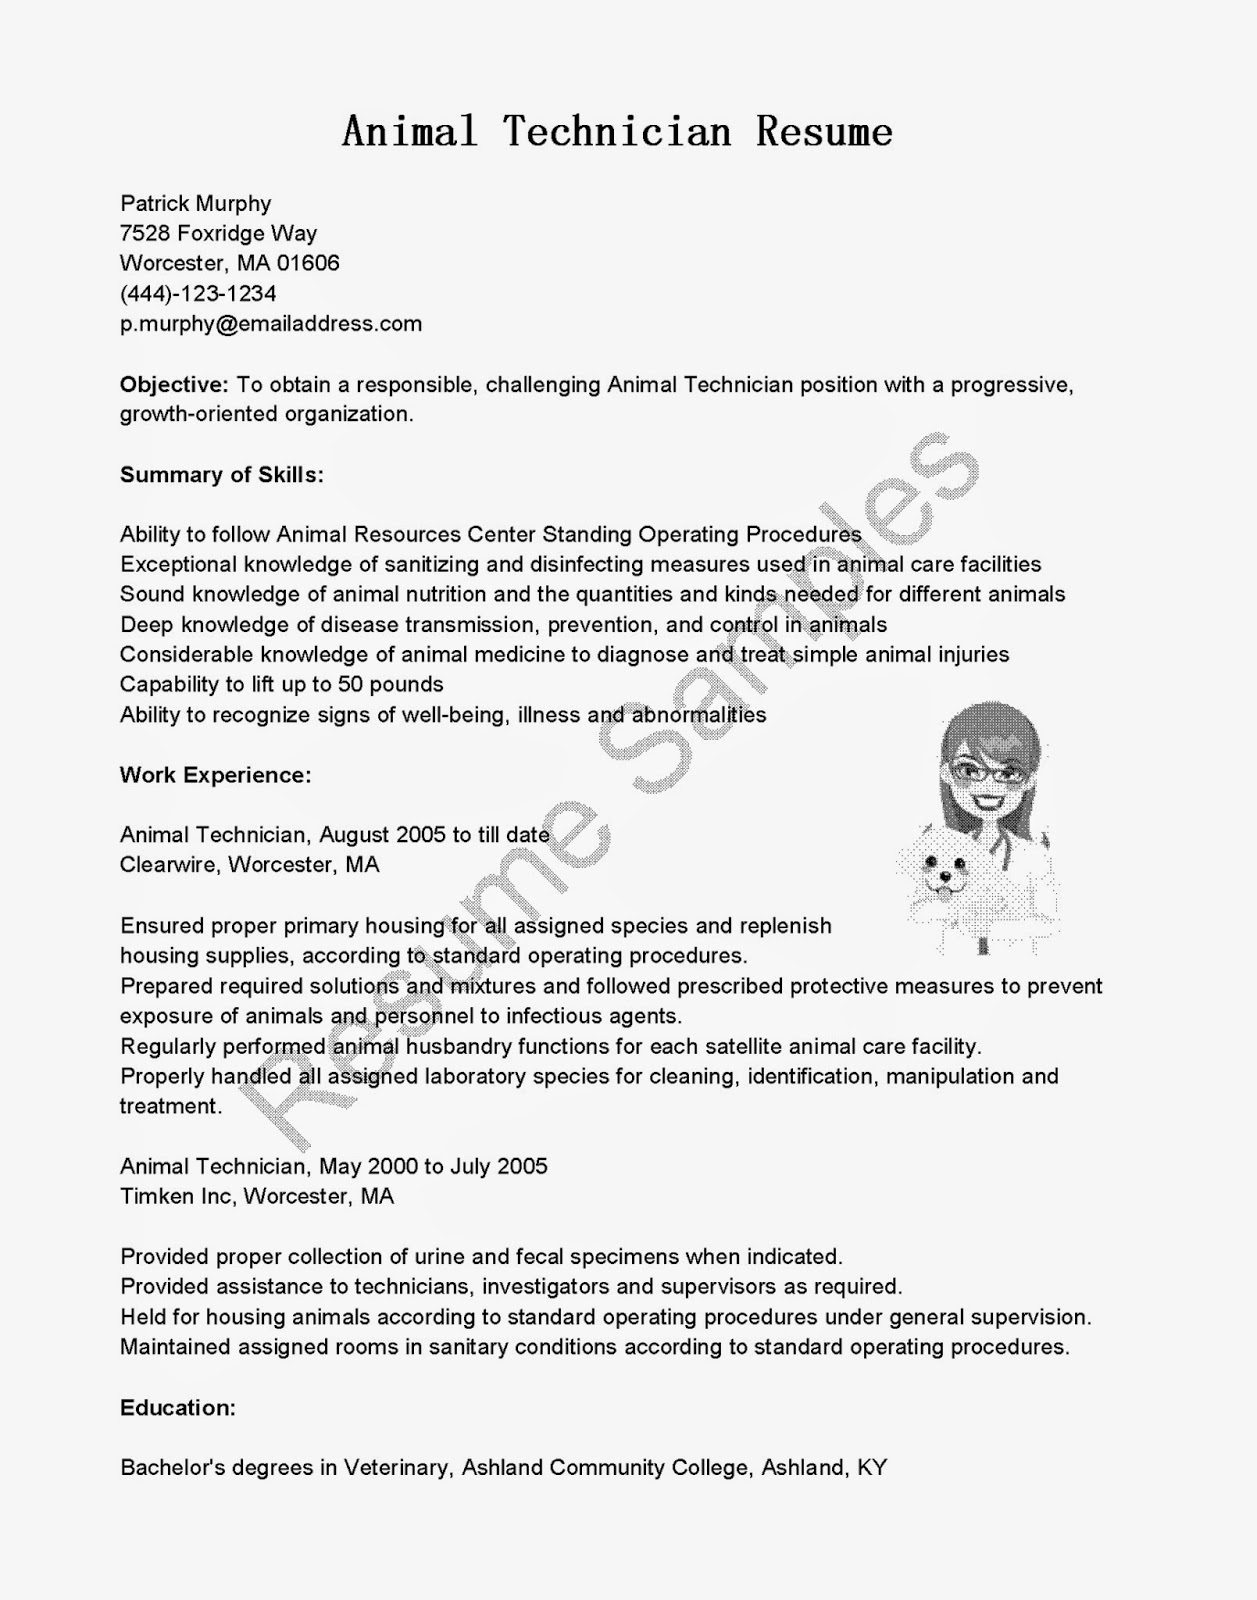 Resume capability summary